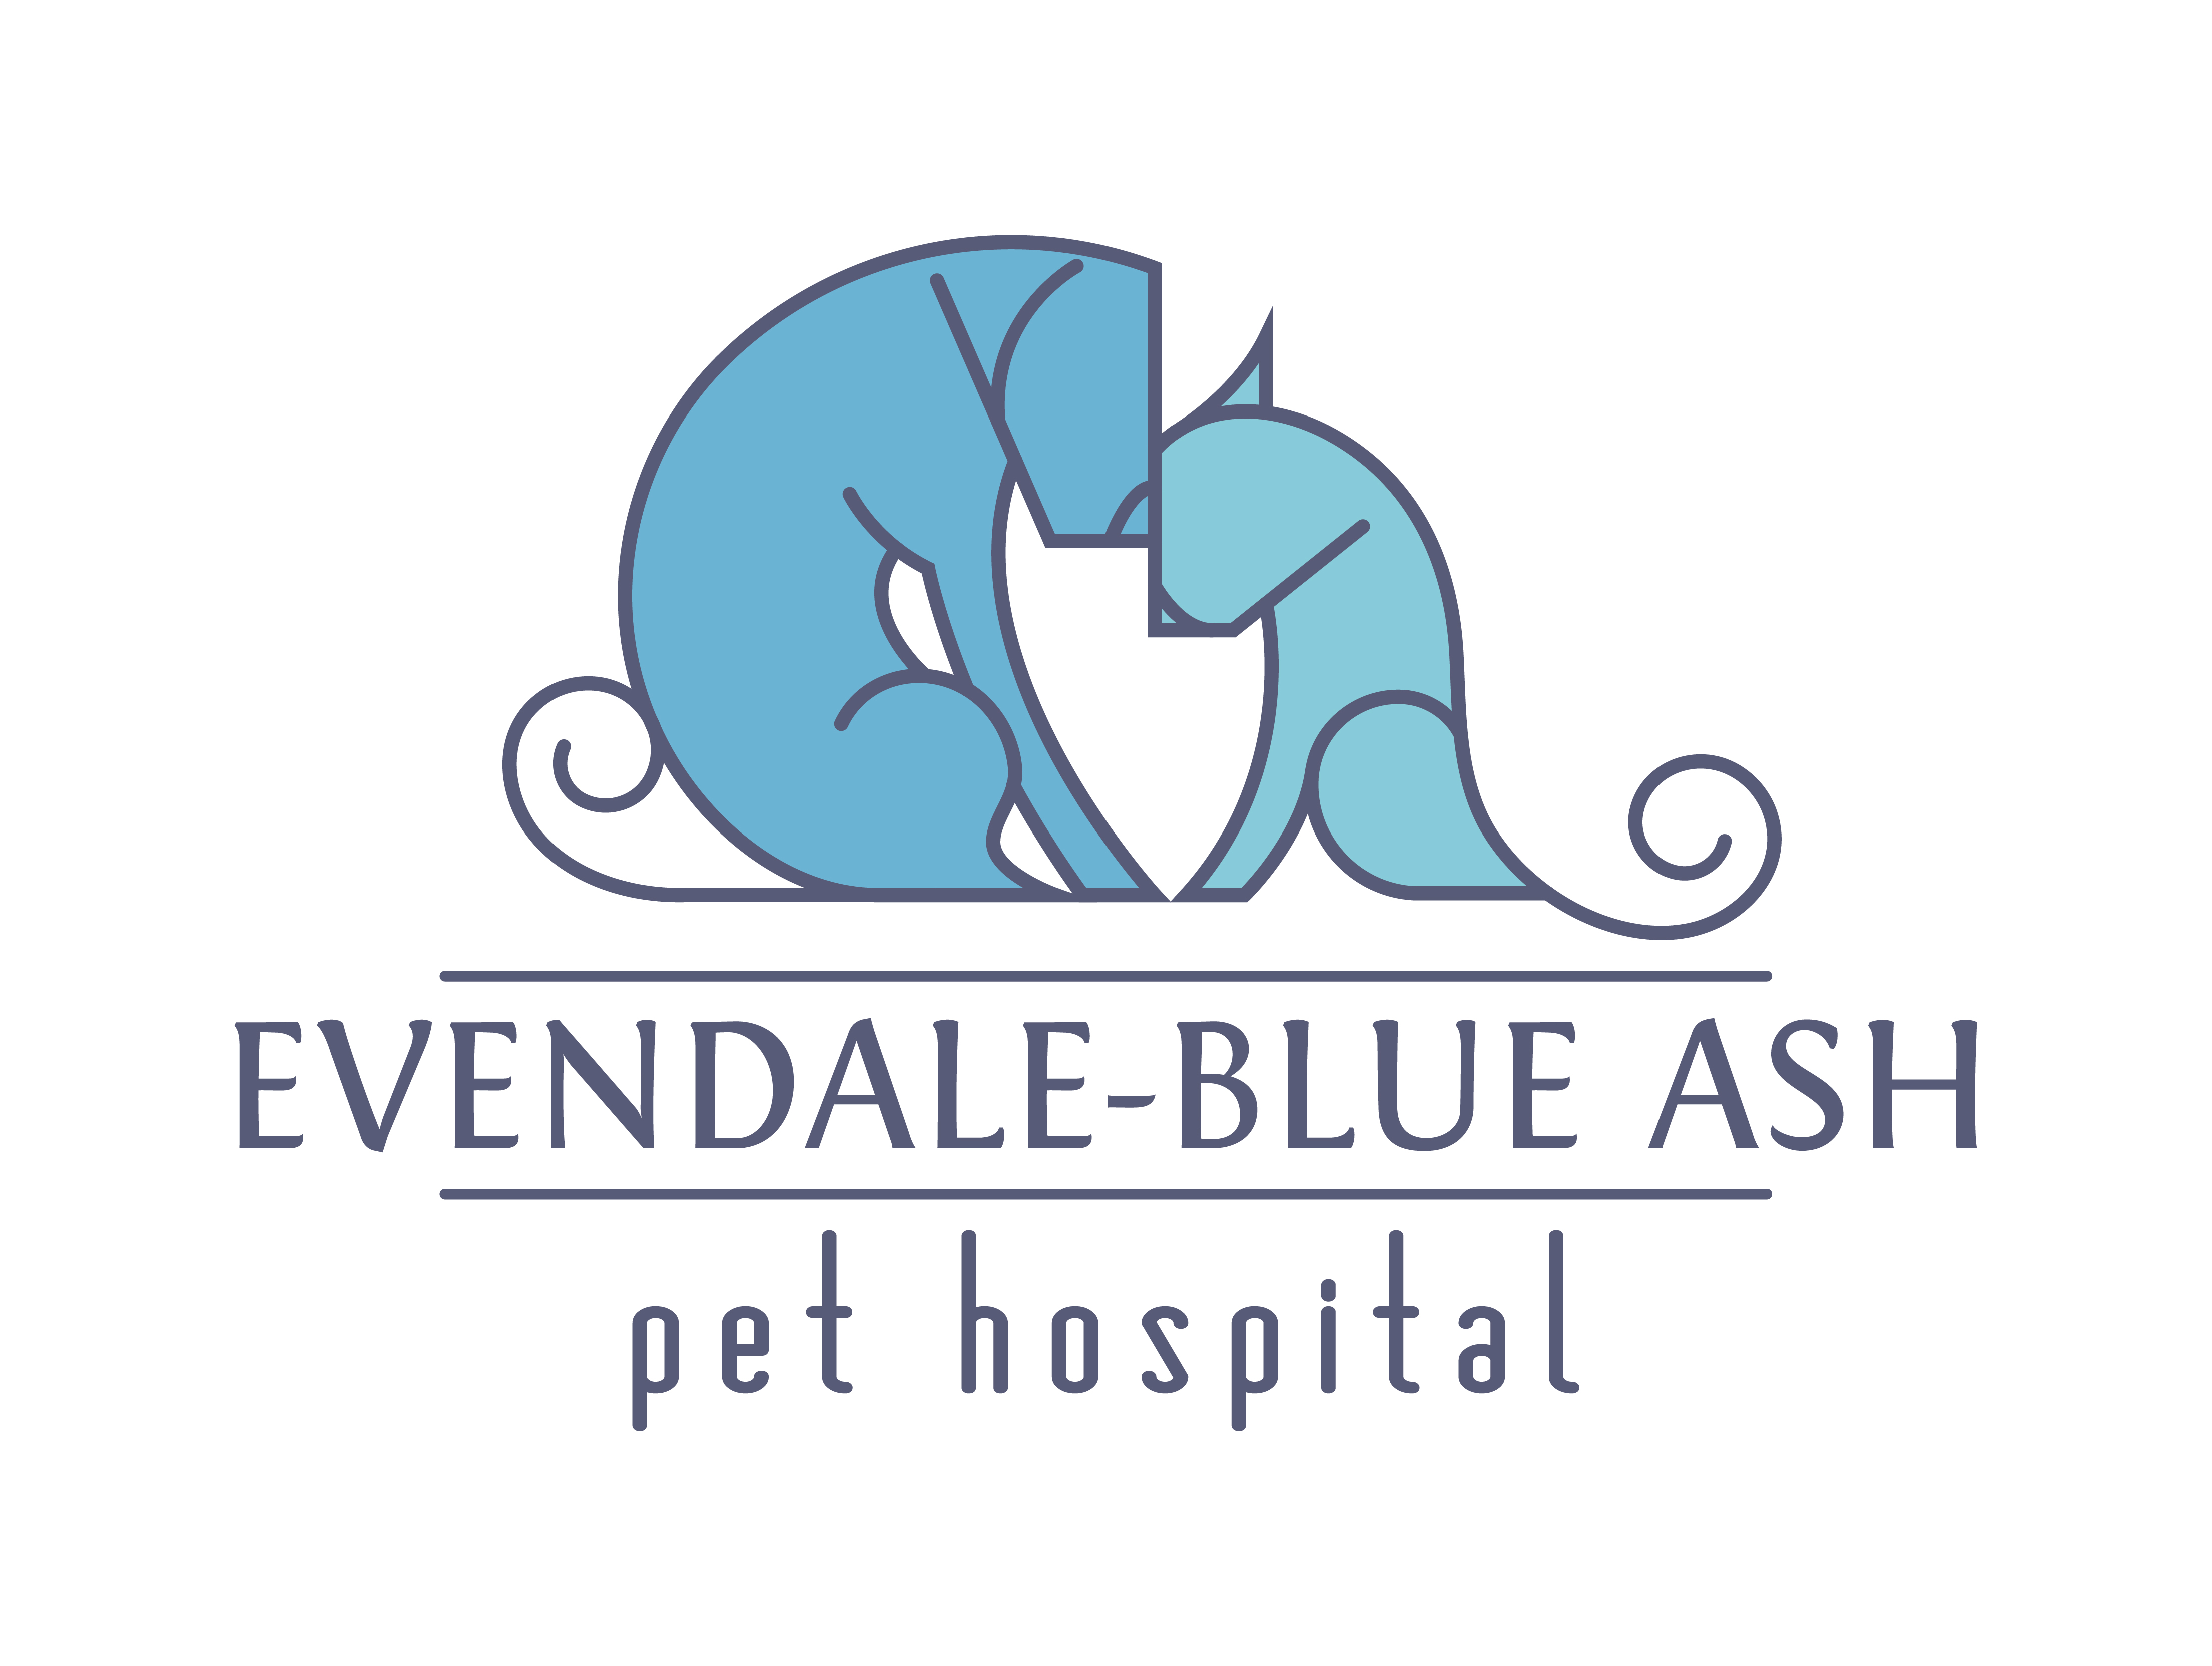 Evendale-Blue Ash Pet Hospital